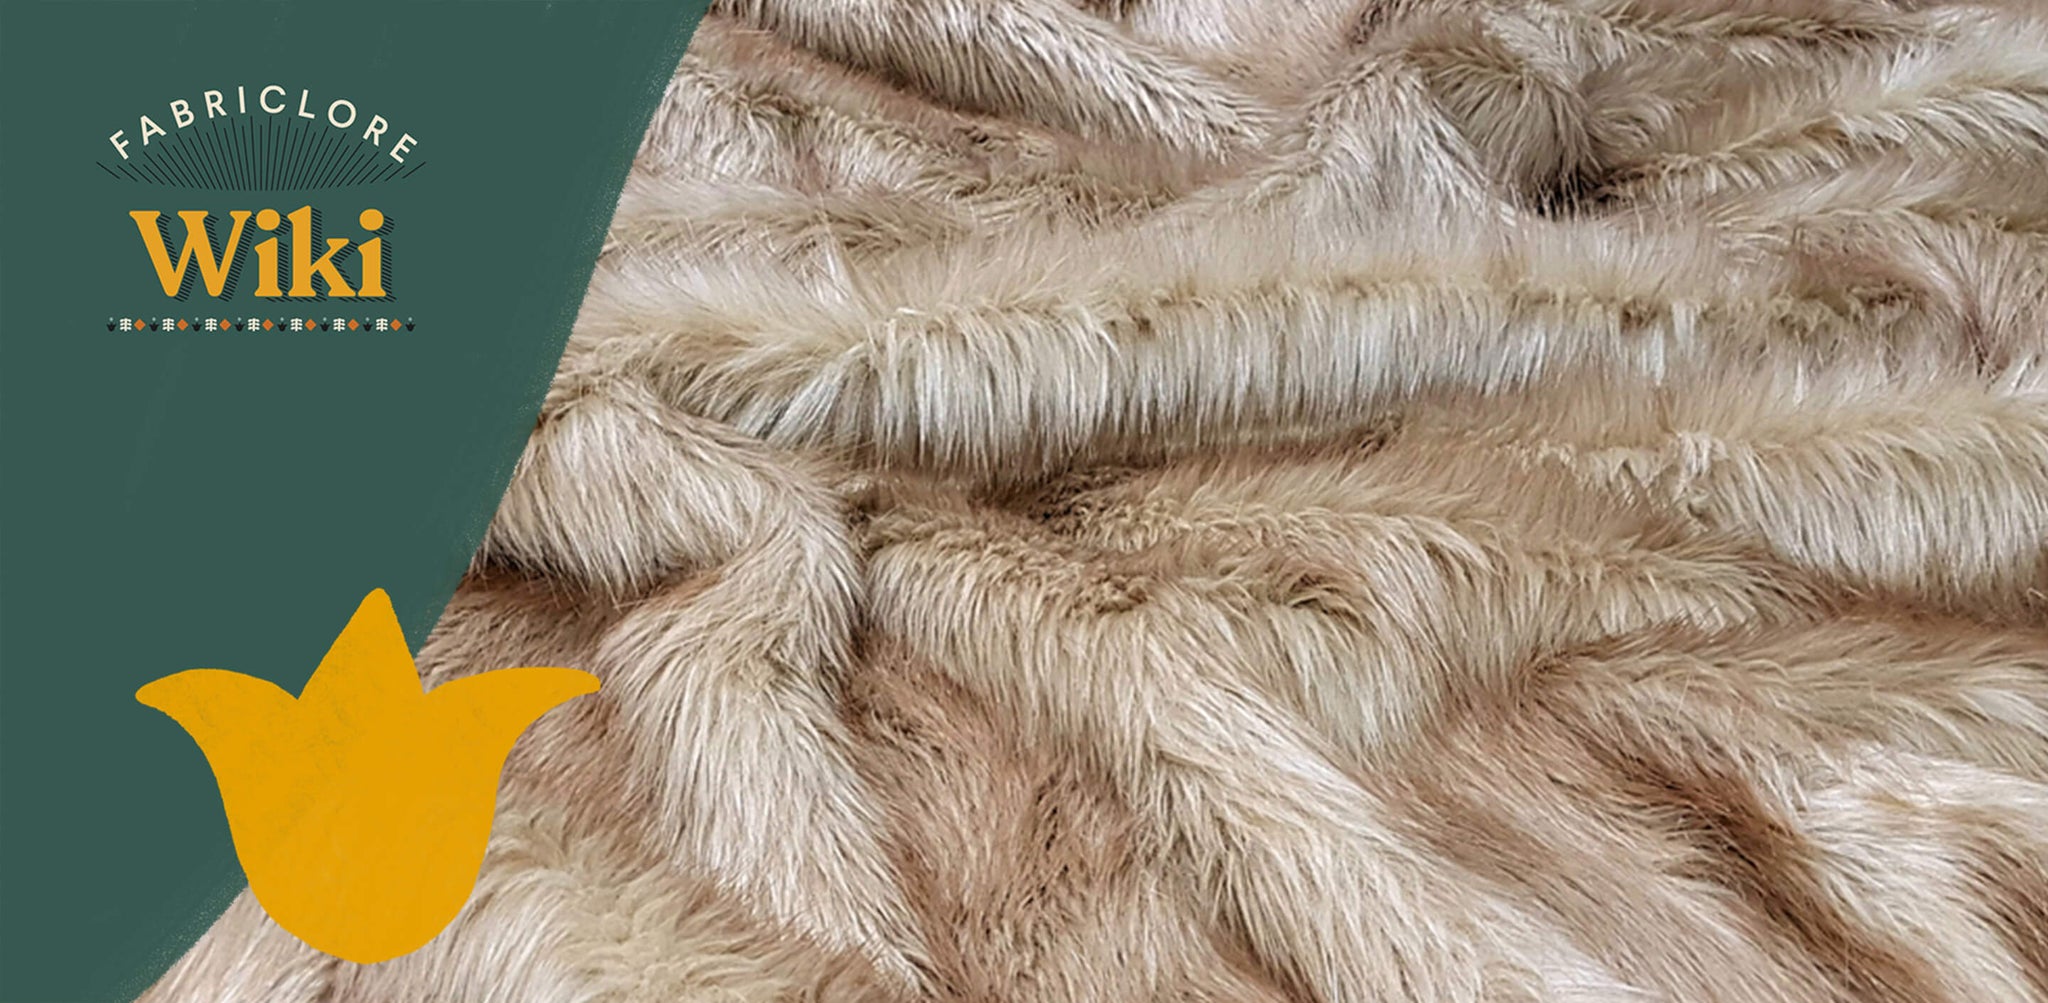 How Faux Fur Is Originated?